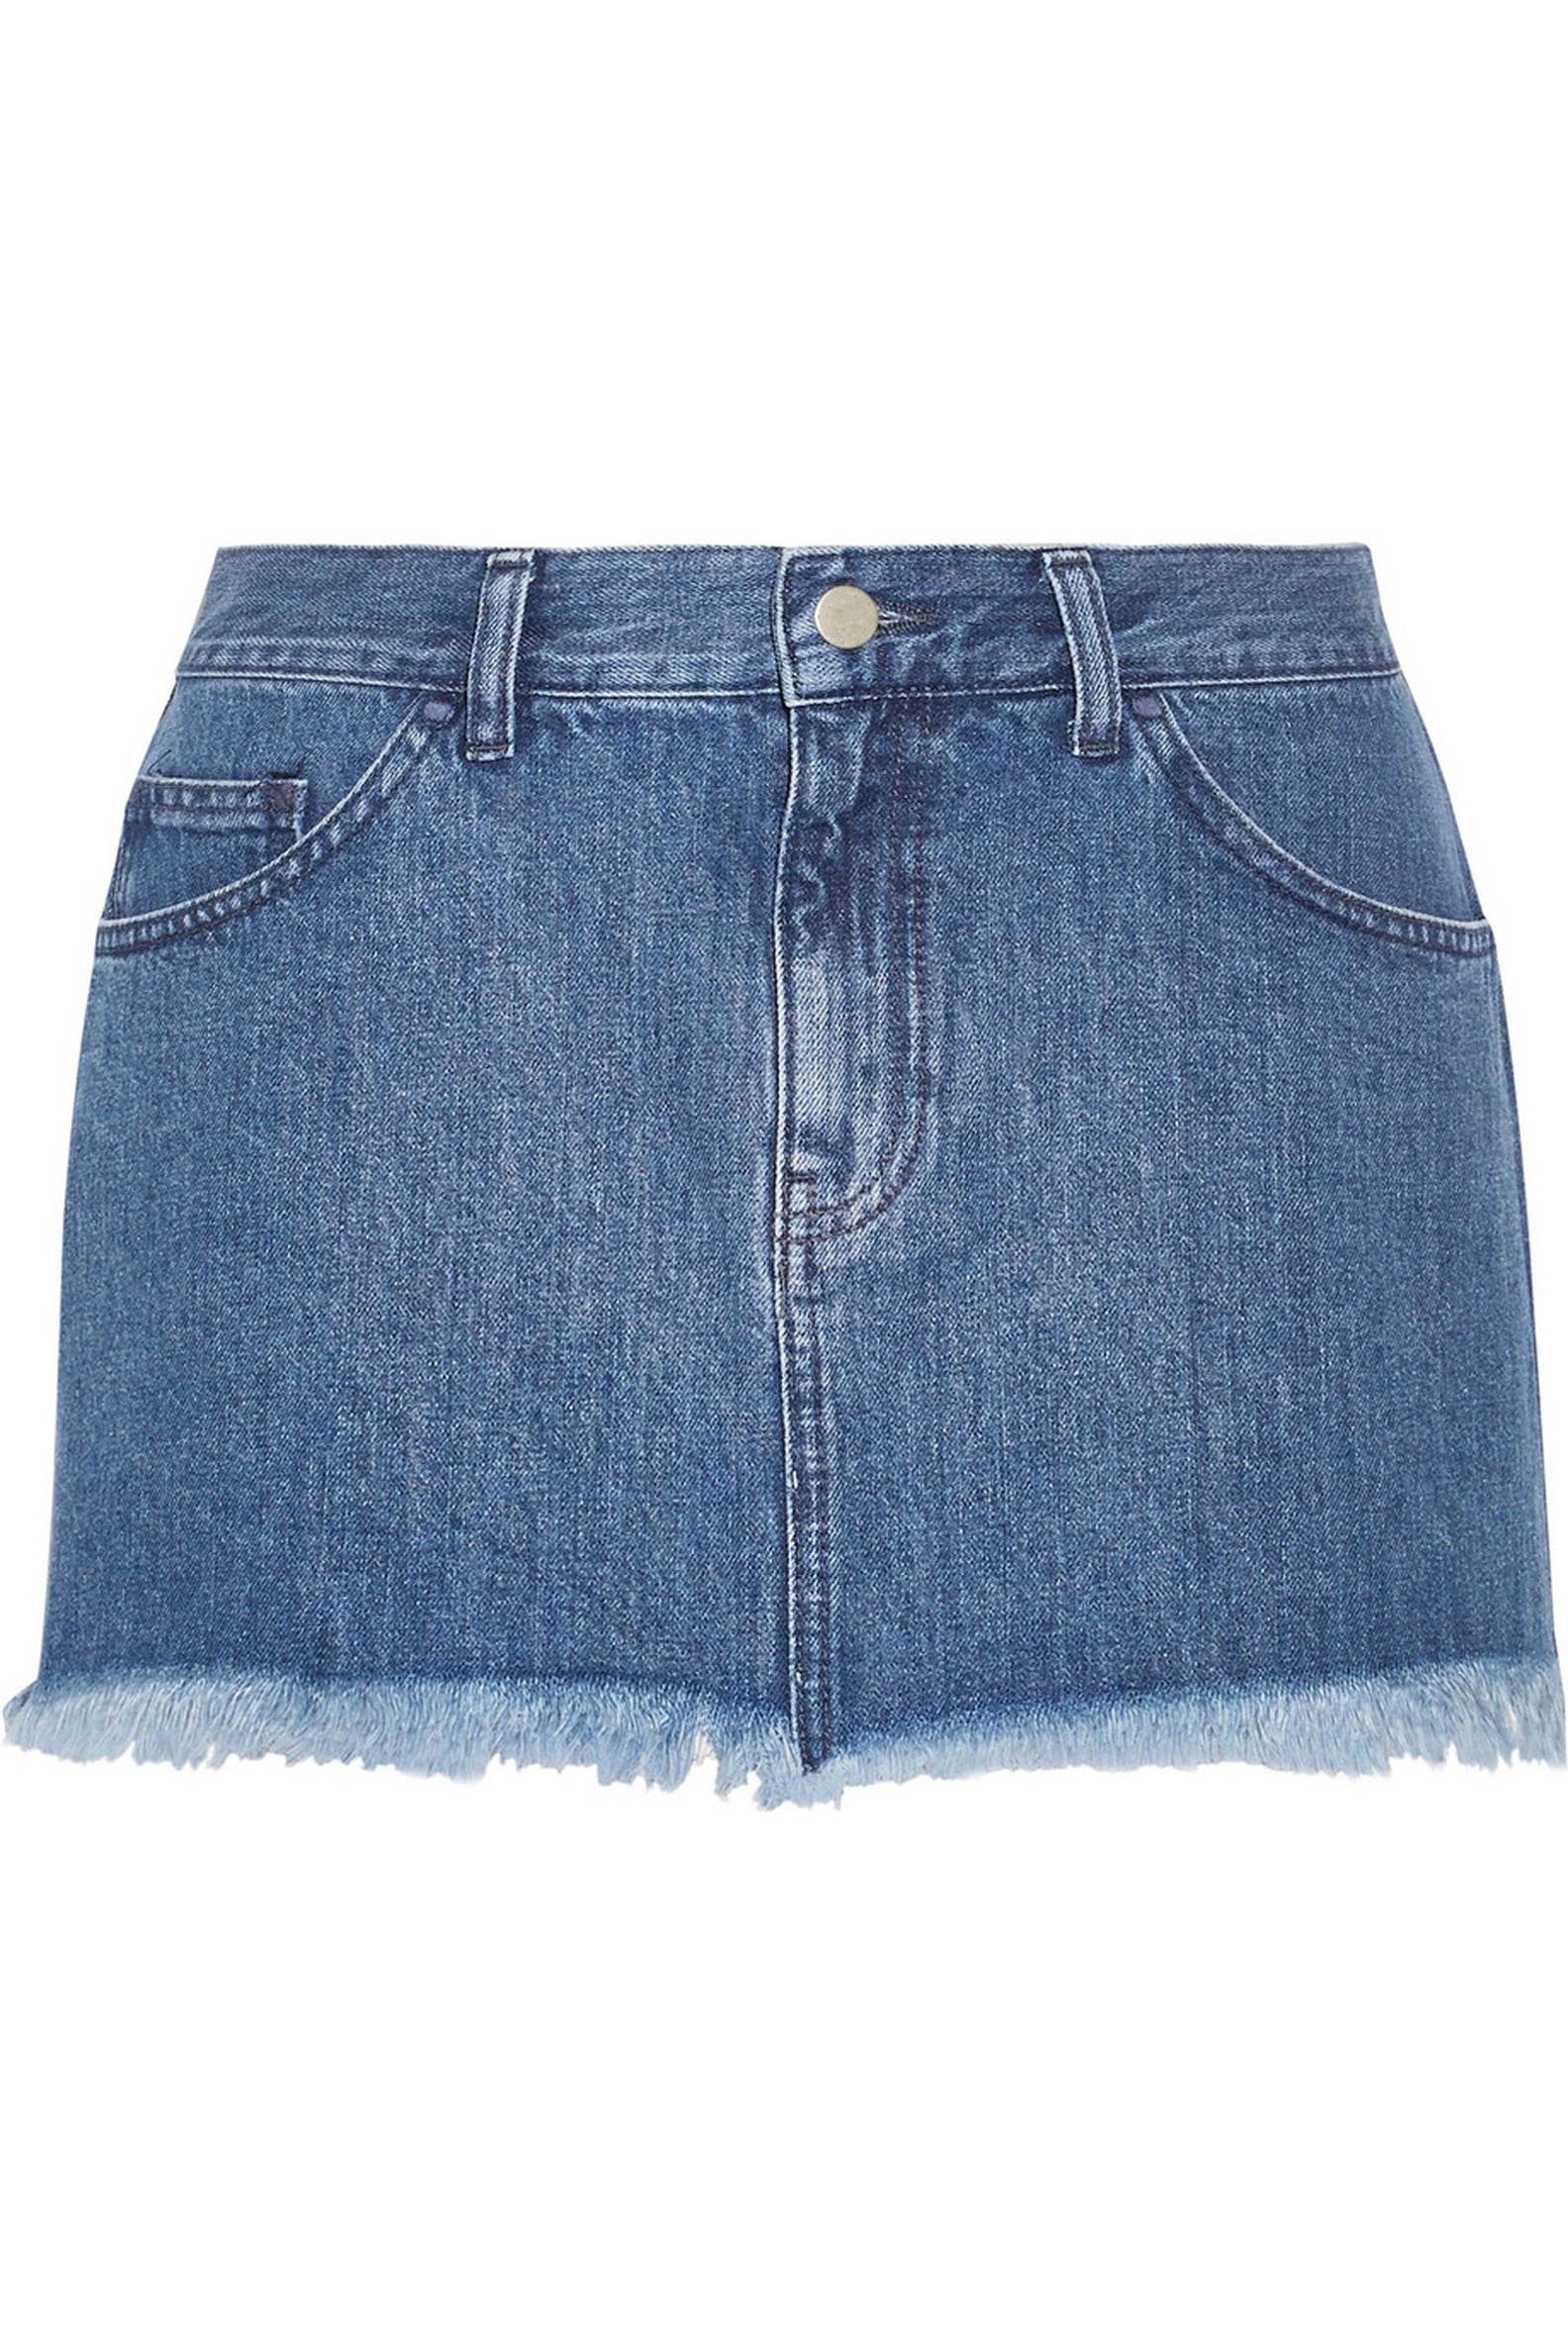 Kendall Jenner's Short Denim Skirt | POPSUGAR Fashion